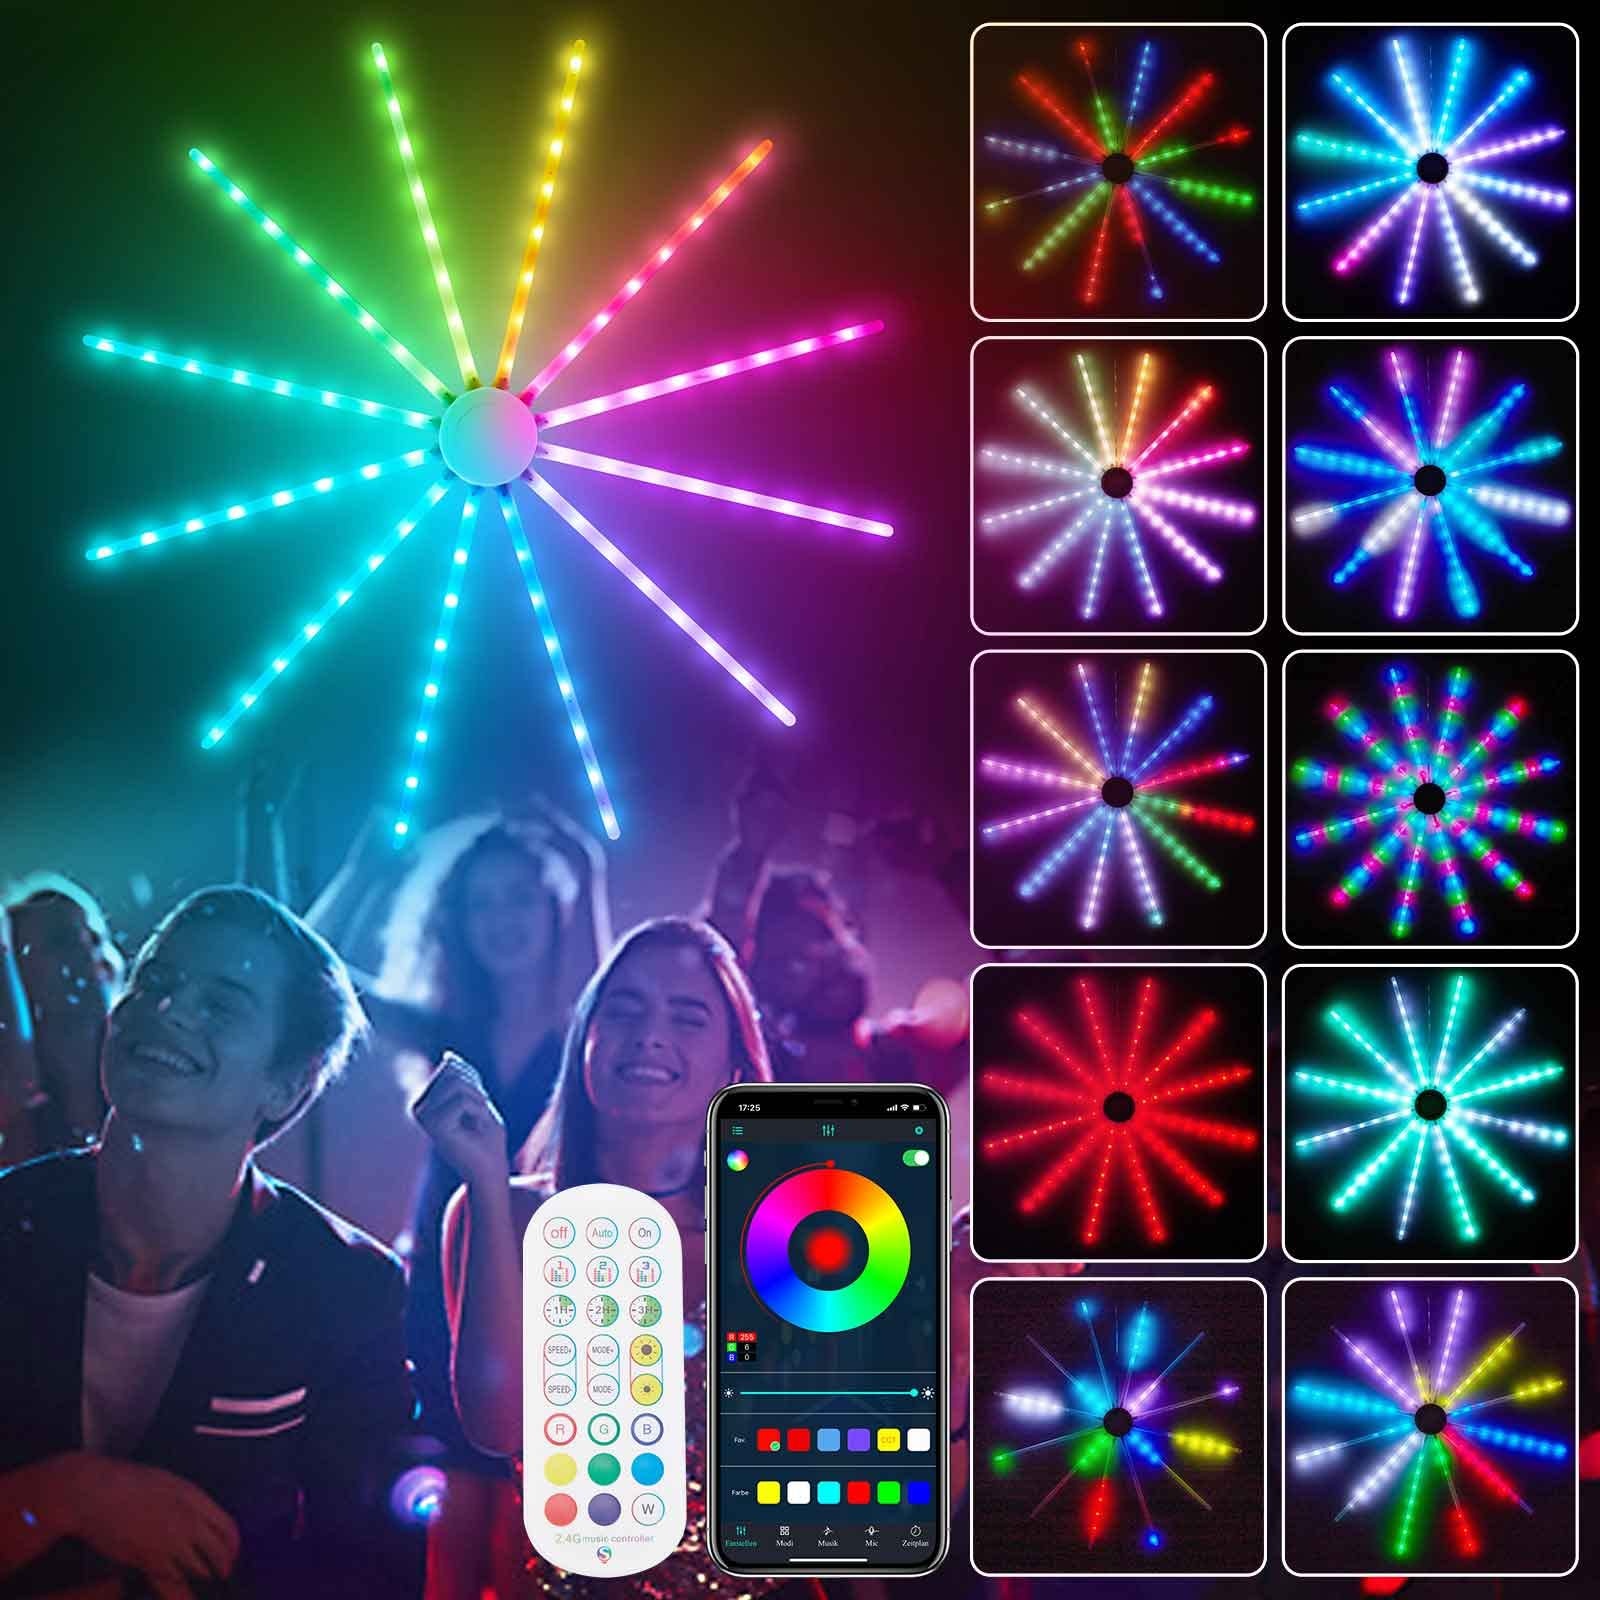 Rosnek LED Feuerwerk Lichter App Steuerung, Starburst Lichter 96LEDs, 213 Modi Wasserdicht Innen Lichterketten mit Fernbedienung für Weihnachten Party Bar Gaming Room Zimmer Deko